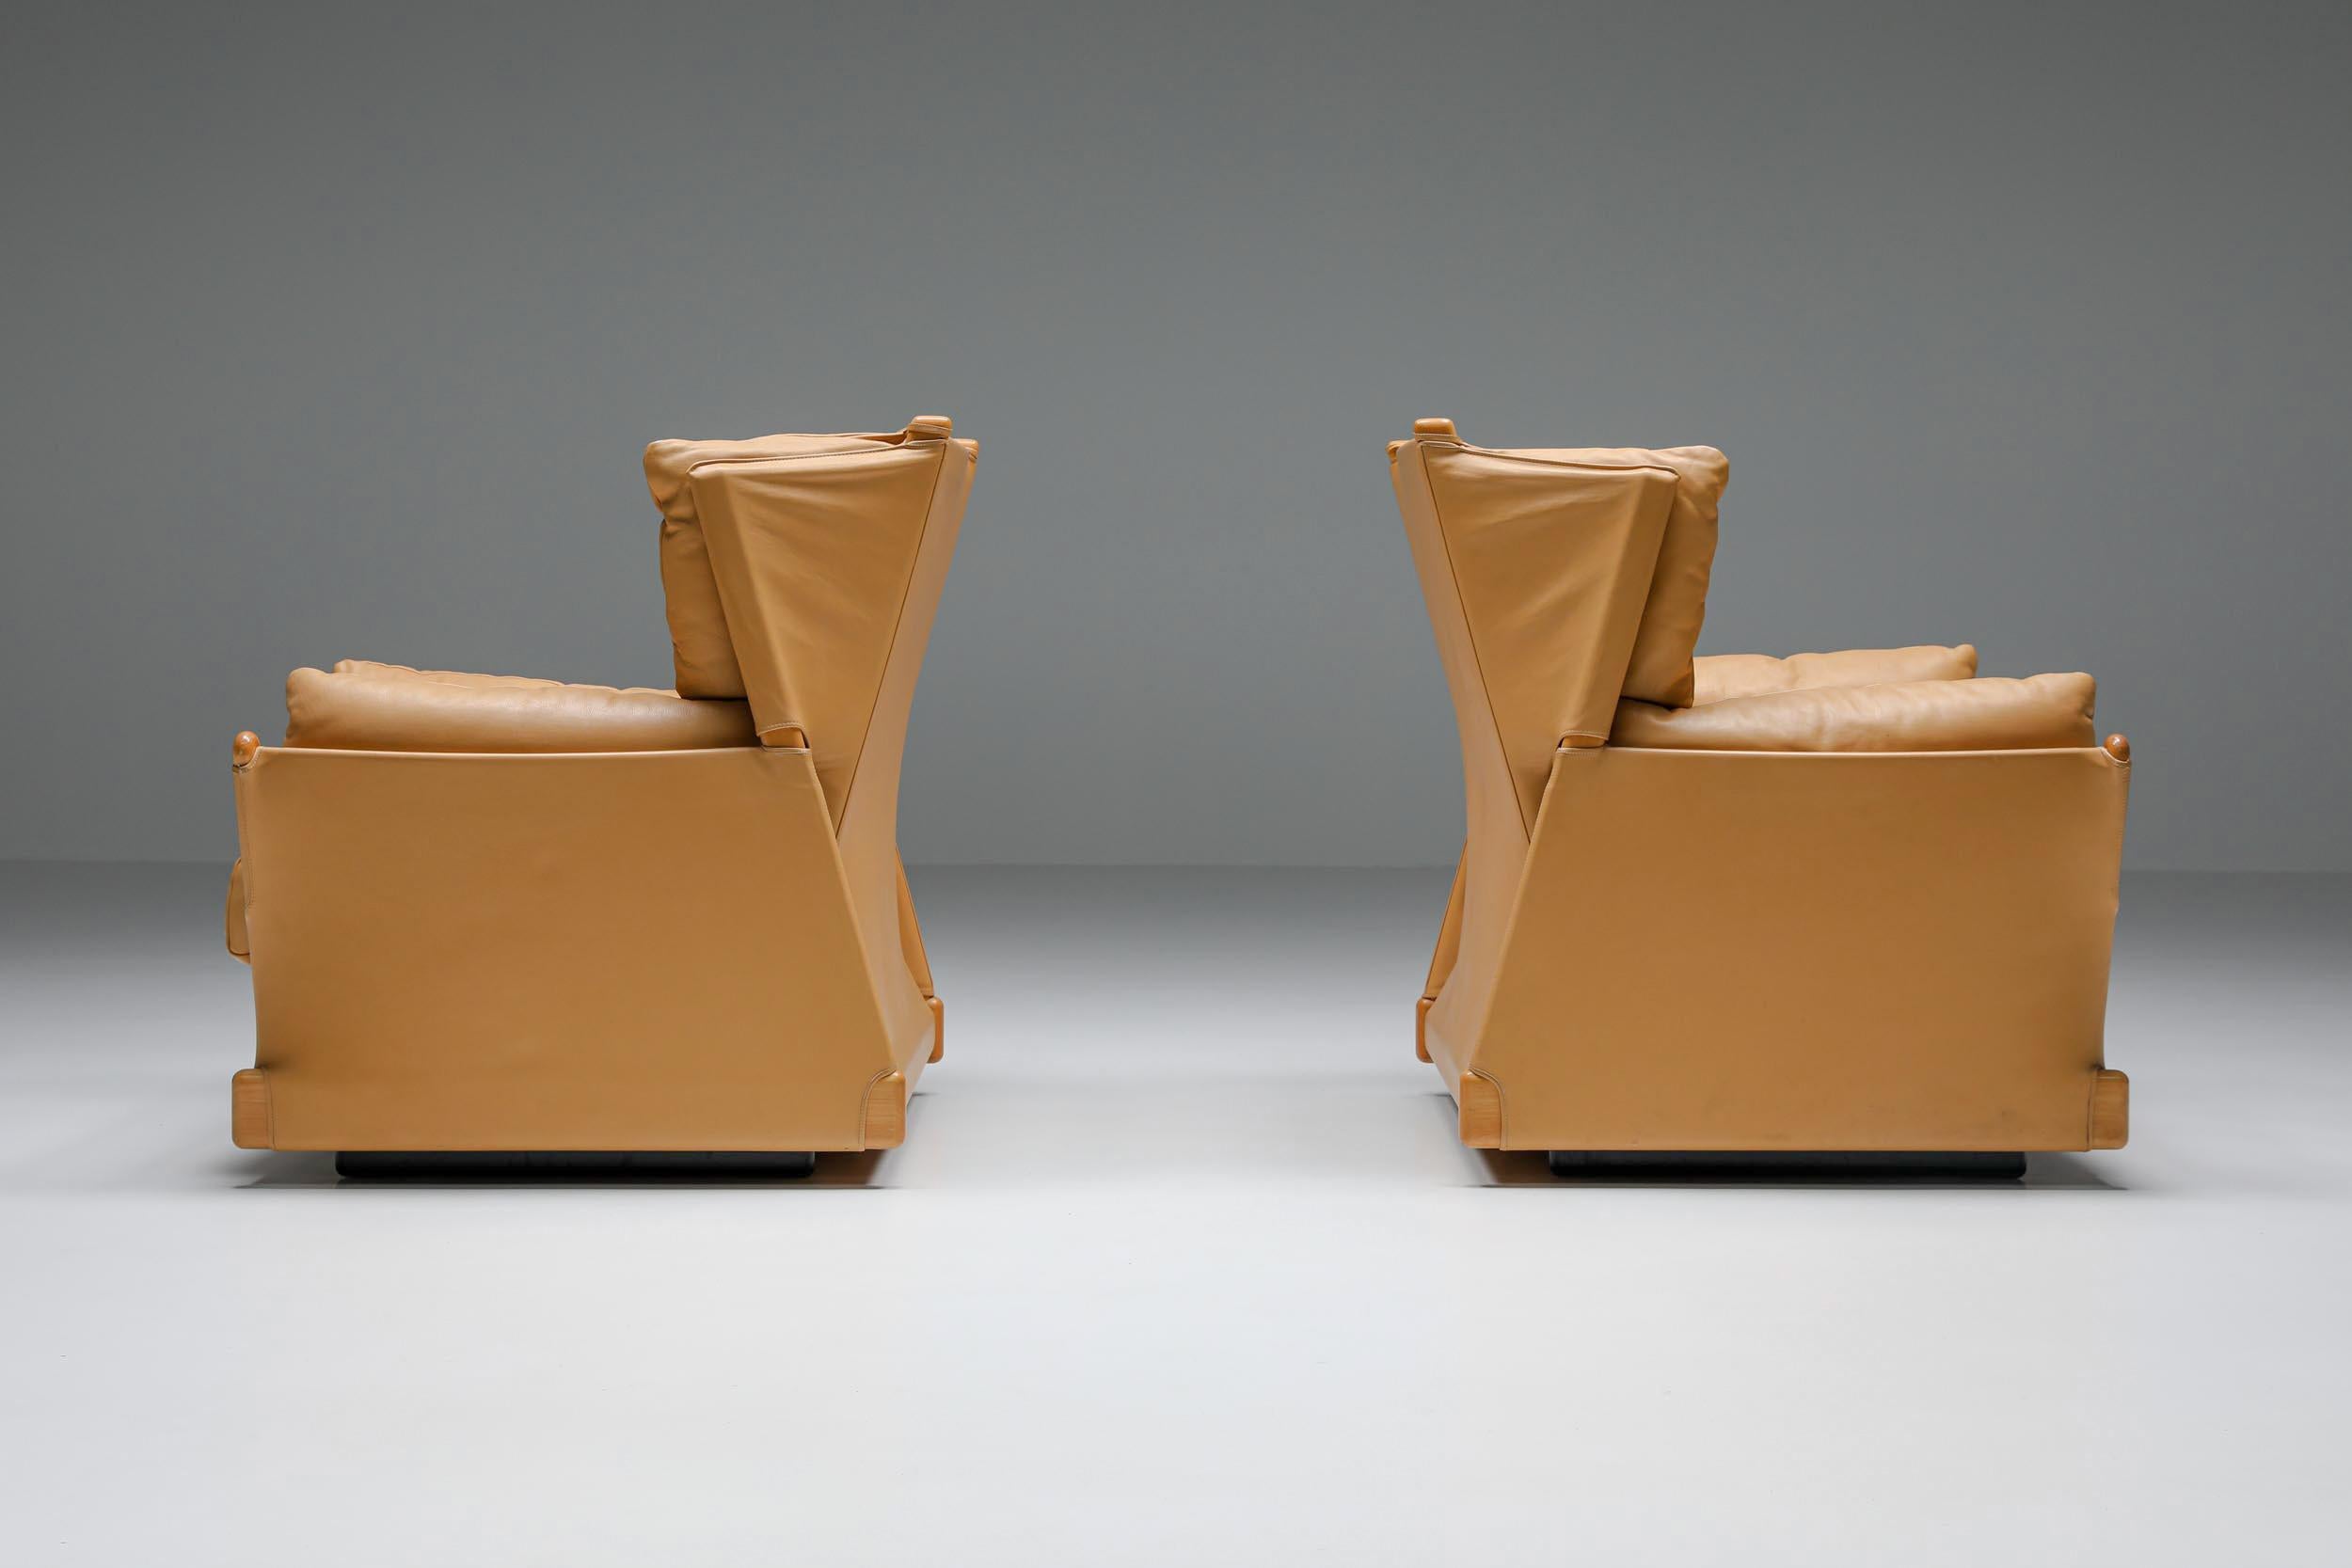 Cassina ; Fauteuils 'Viola d'amore' ; Piero de Martini ; Chaises longues ; Postmoderne ; 1977

Cassina a produit ces chaises longues de luxe post-modernes du designer italien Piero de Martini. Remarquablement confortables, de magnifiques sièges en